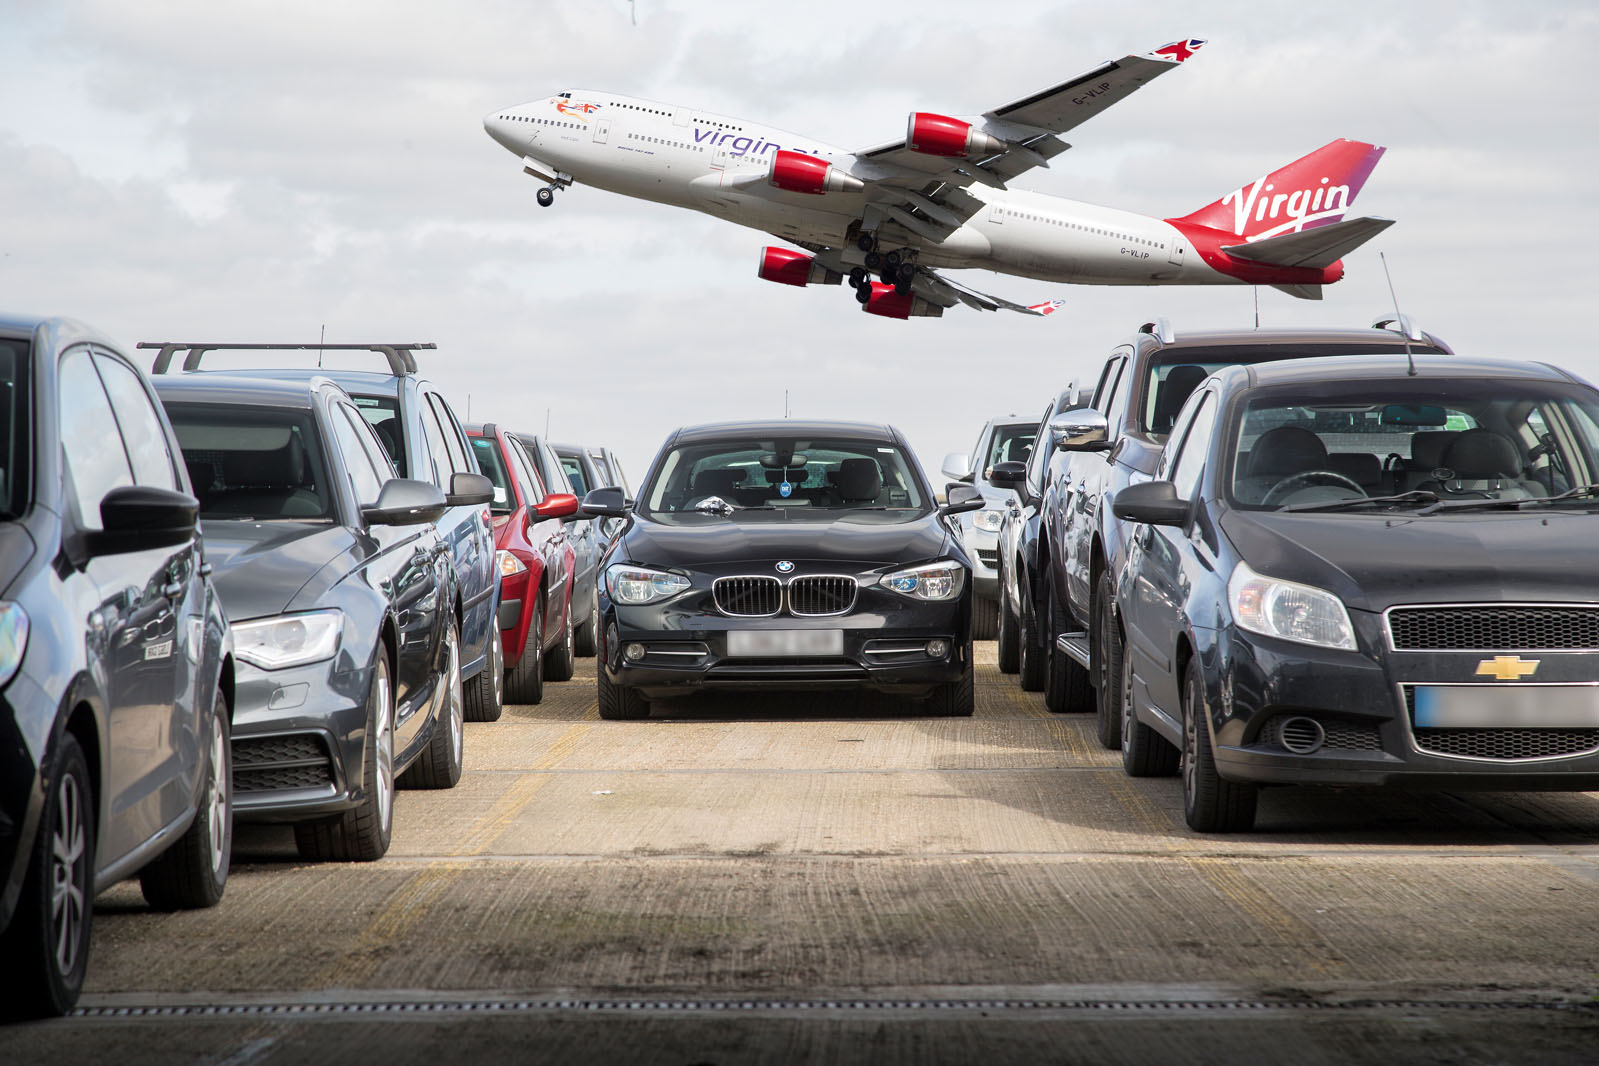 Парковка в аэропорту: что на самом деле происходит, когда вы покидаете свой автомобиль?